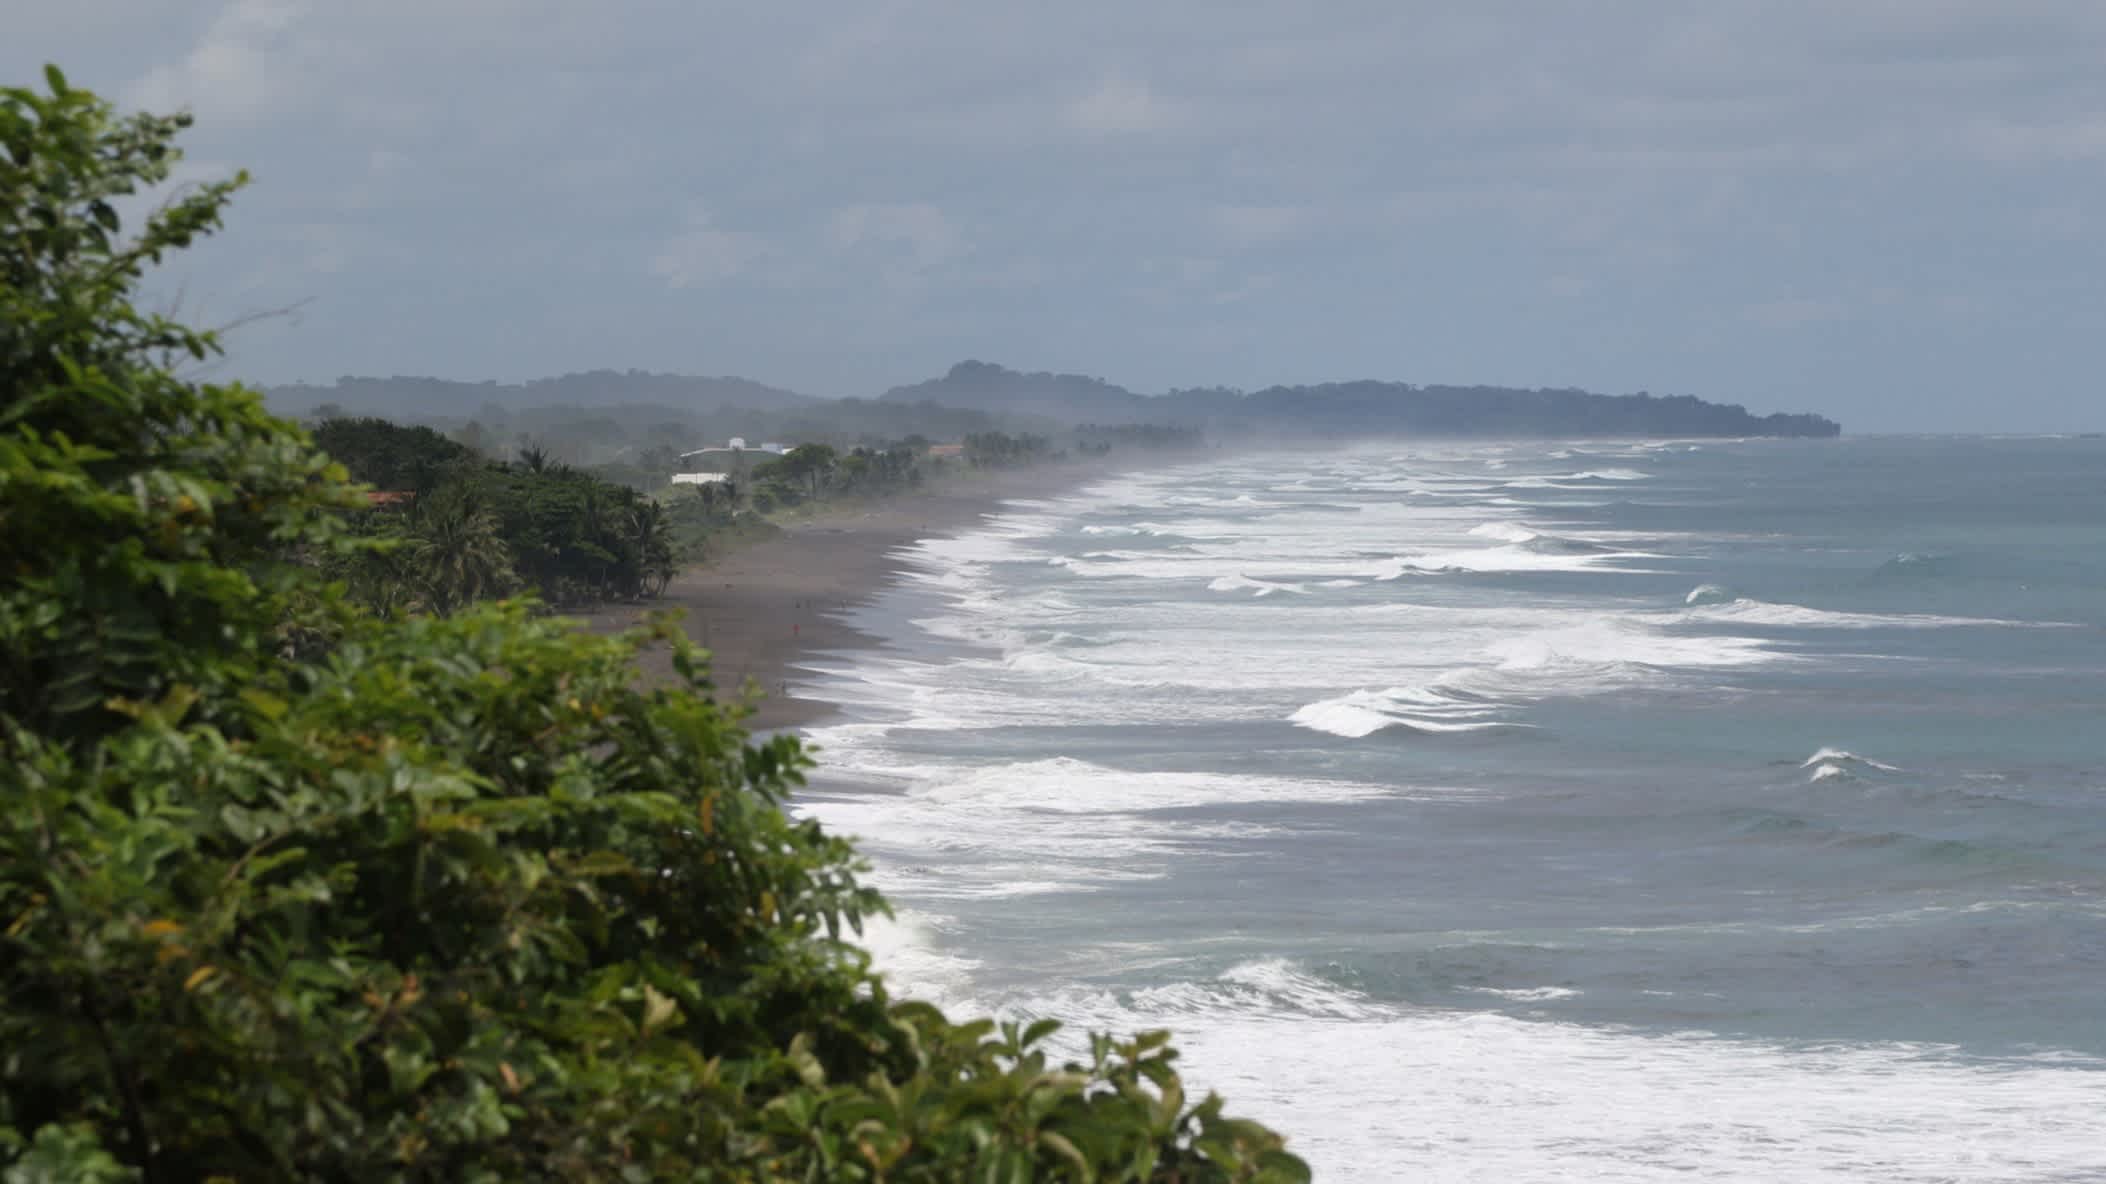 Die wunderschöne Pazifikküste in der Nähe von Jacó in Costa Rica mit welligem Meer, Dschungel und Bergen im Hintergrund bei bewölktem Himmel.

